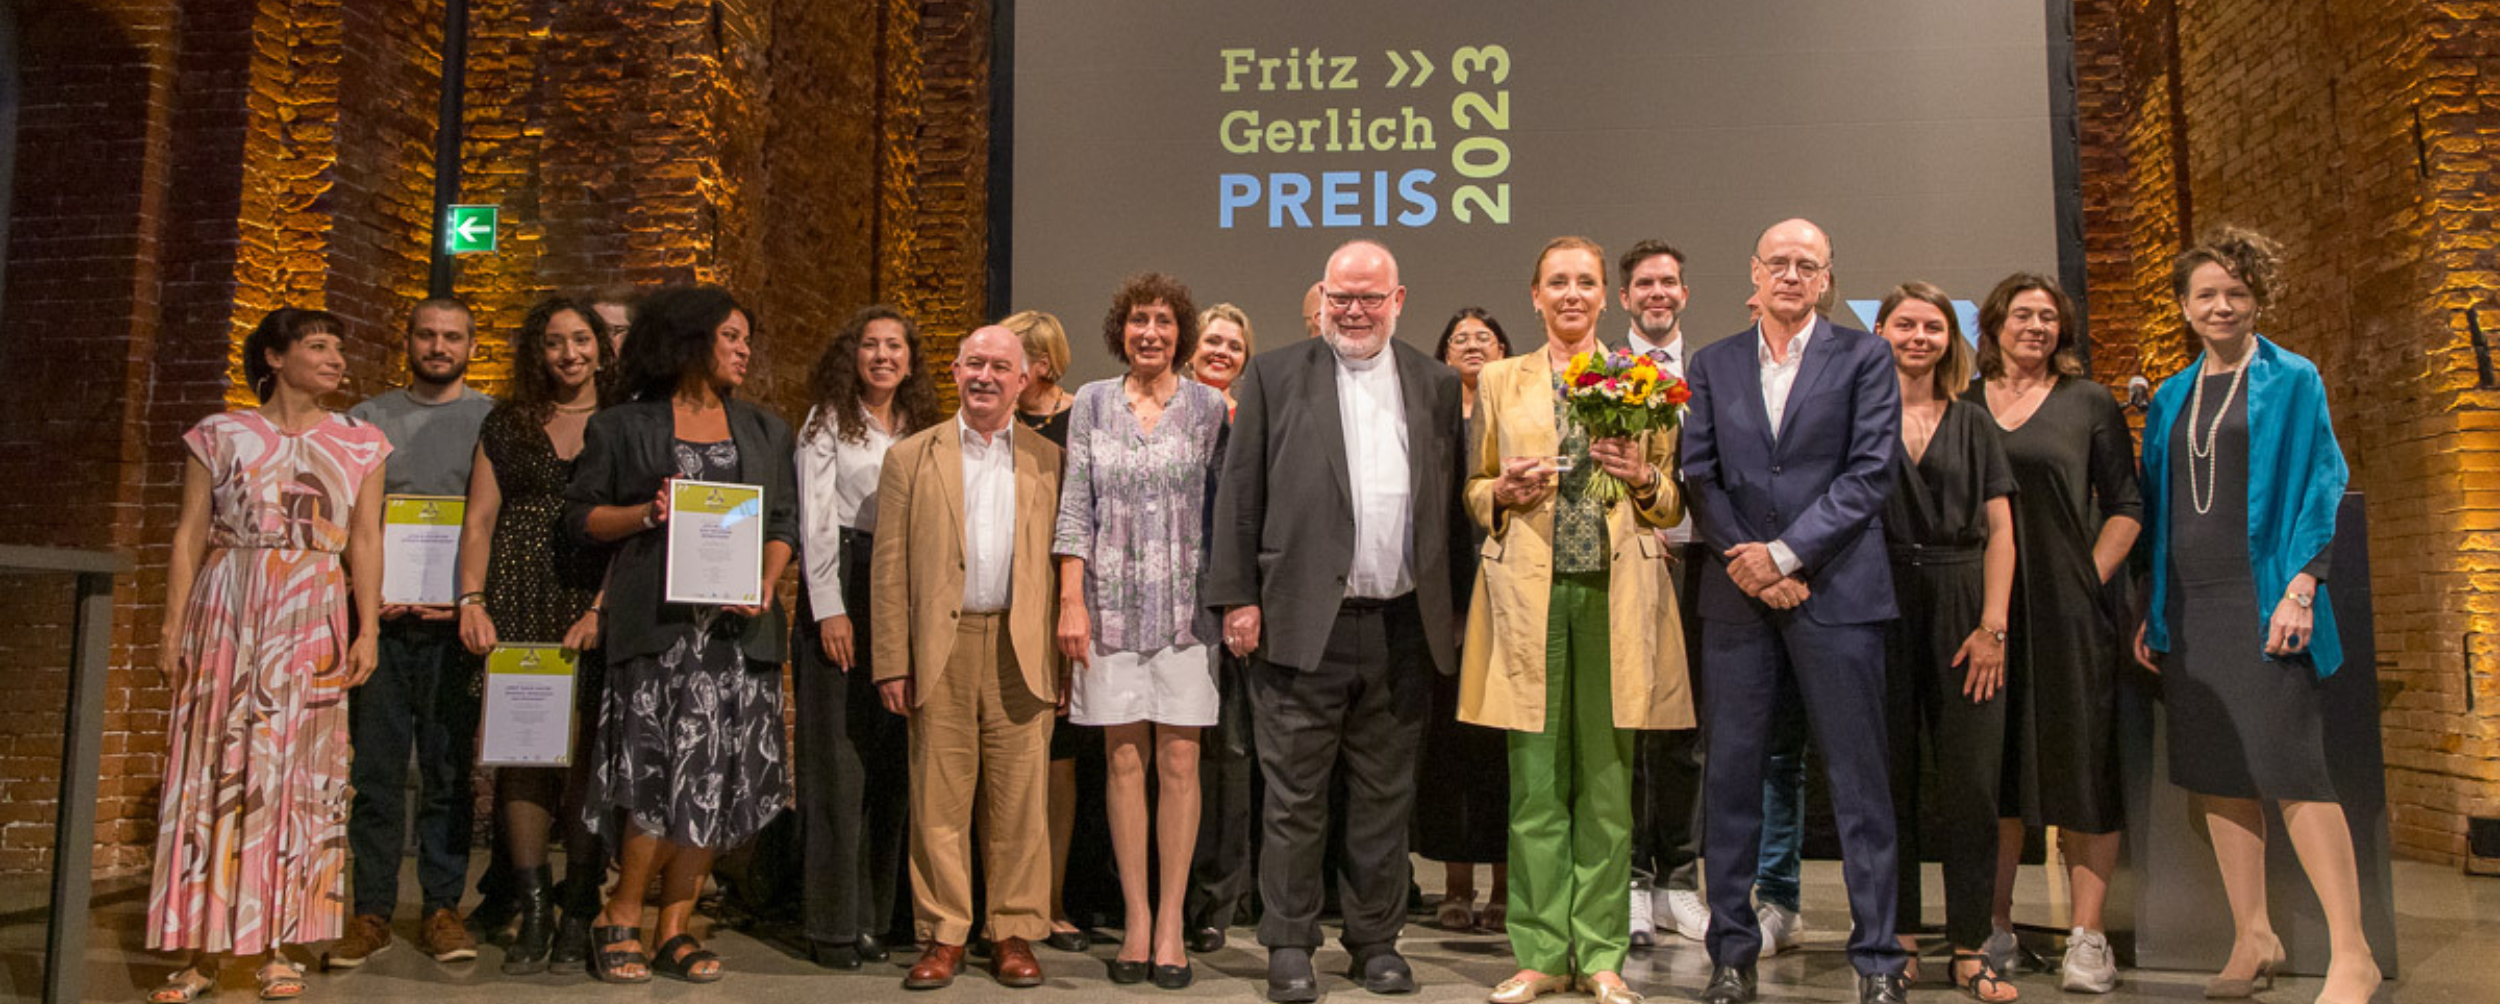 The Magnificent 7 | Fritz-Gerlich-Preis 3